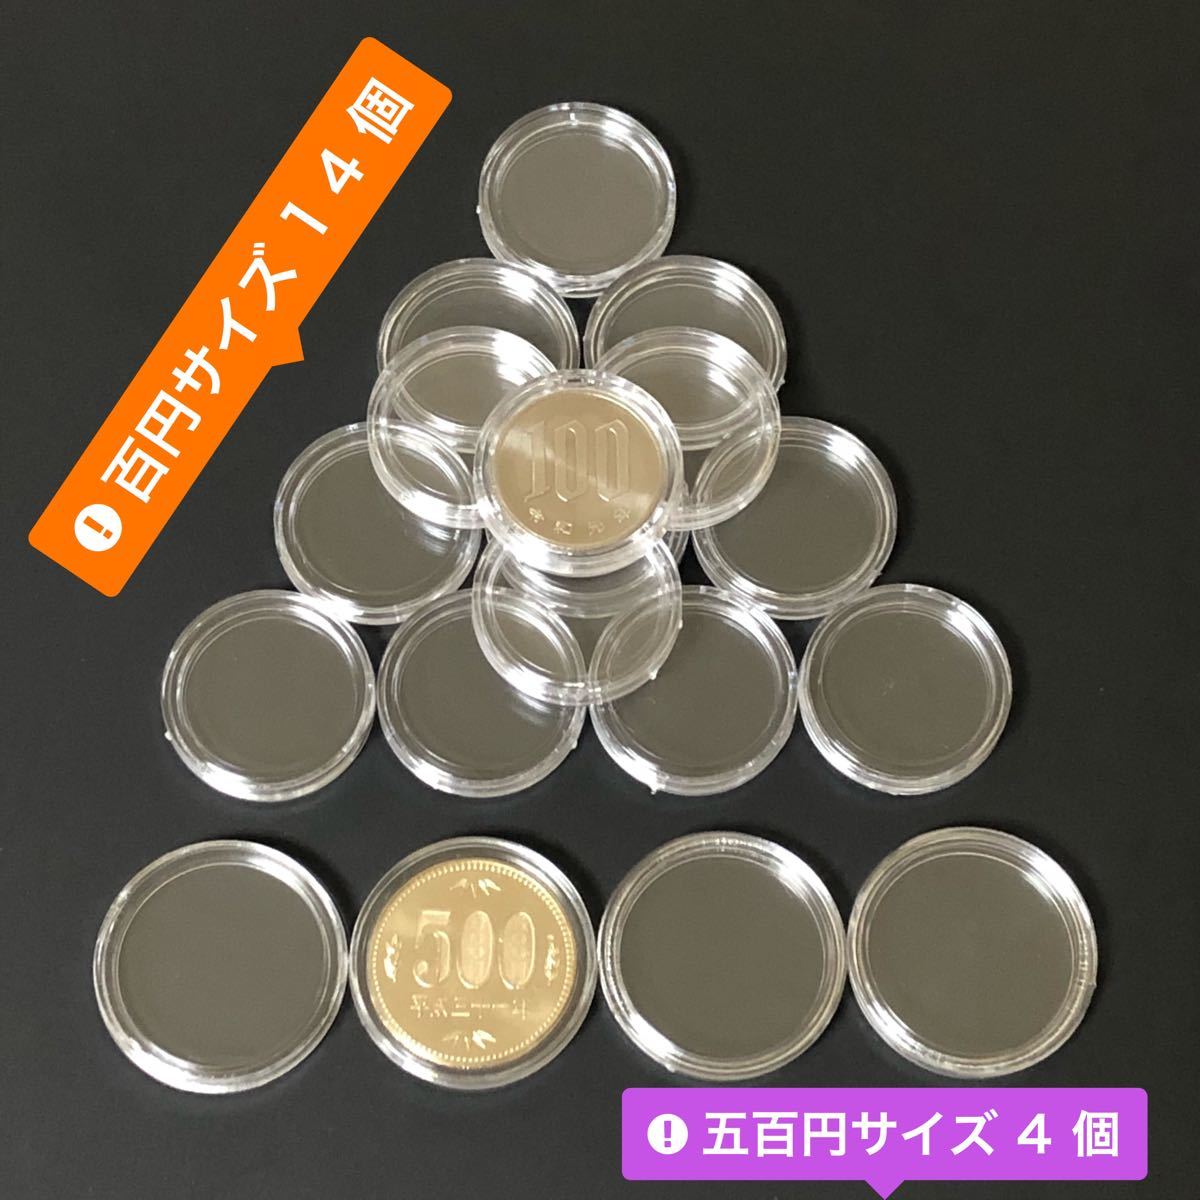 コインカプセル コインケース 東京2020 オリンピック 新幹線 記念硬貨 収納